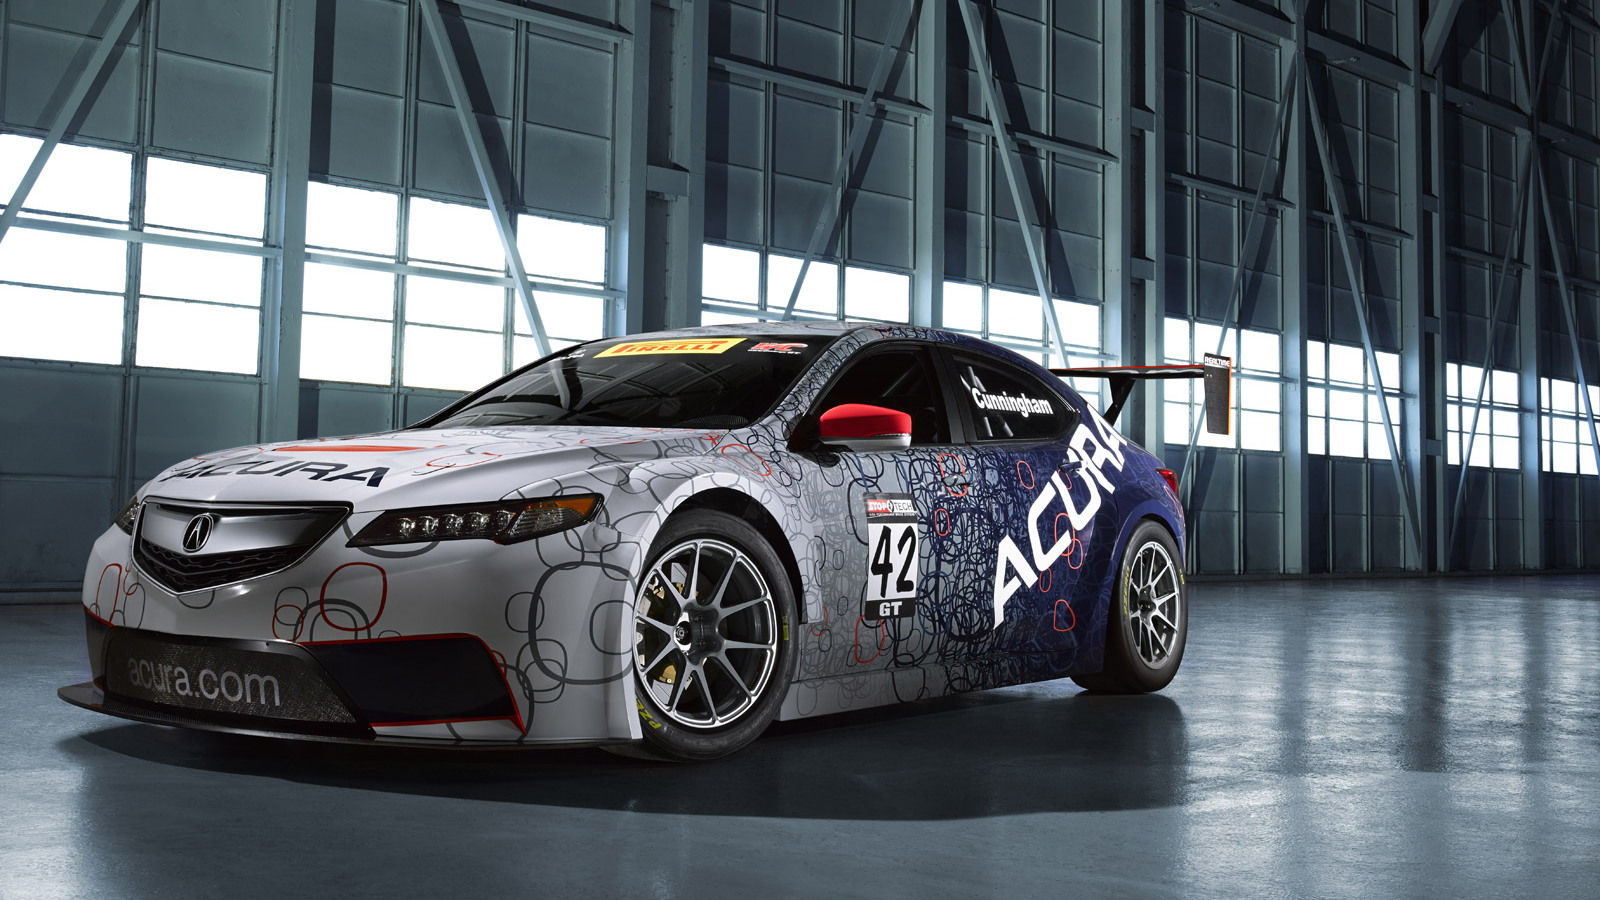 2014 Acura TLX GT race car